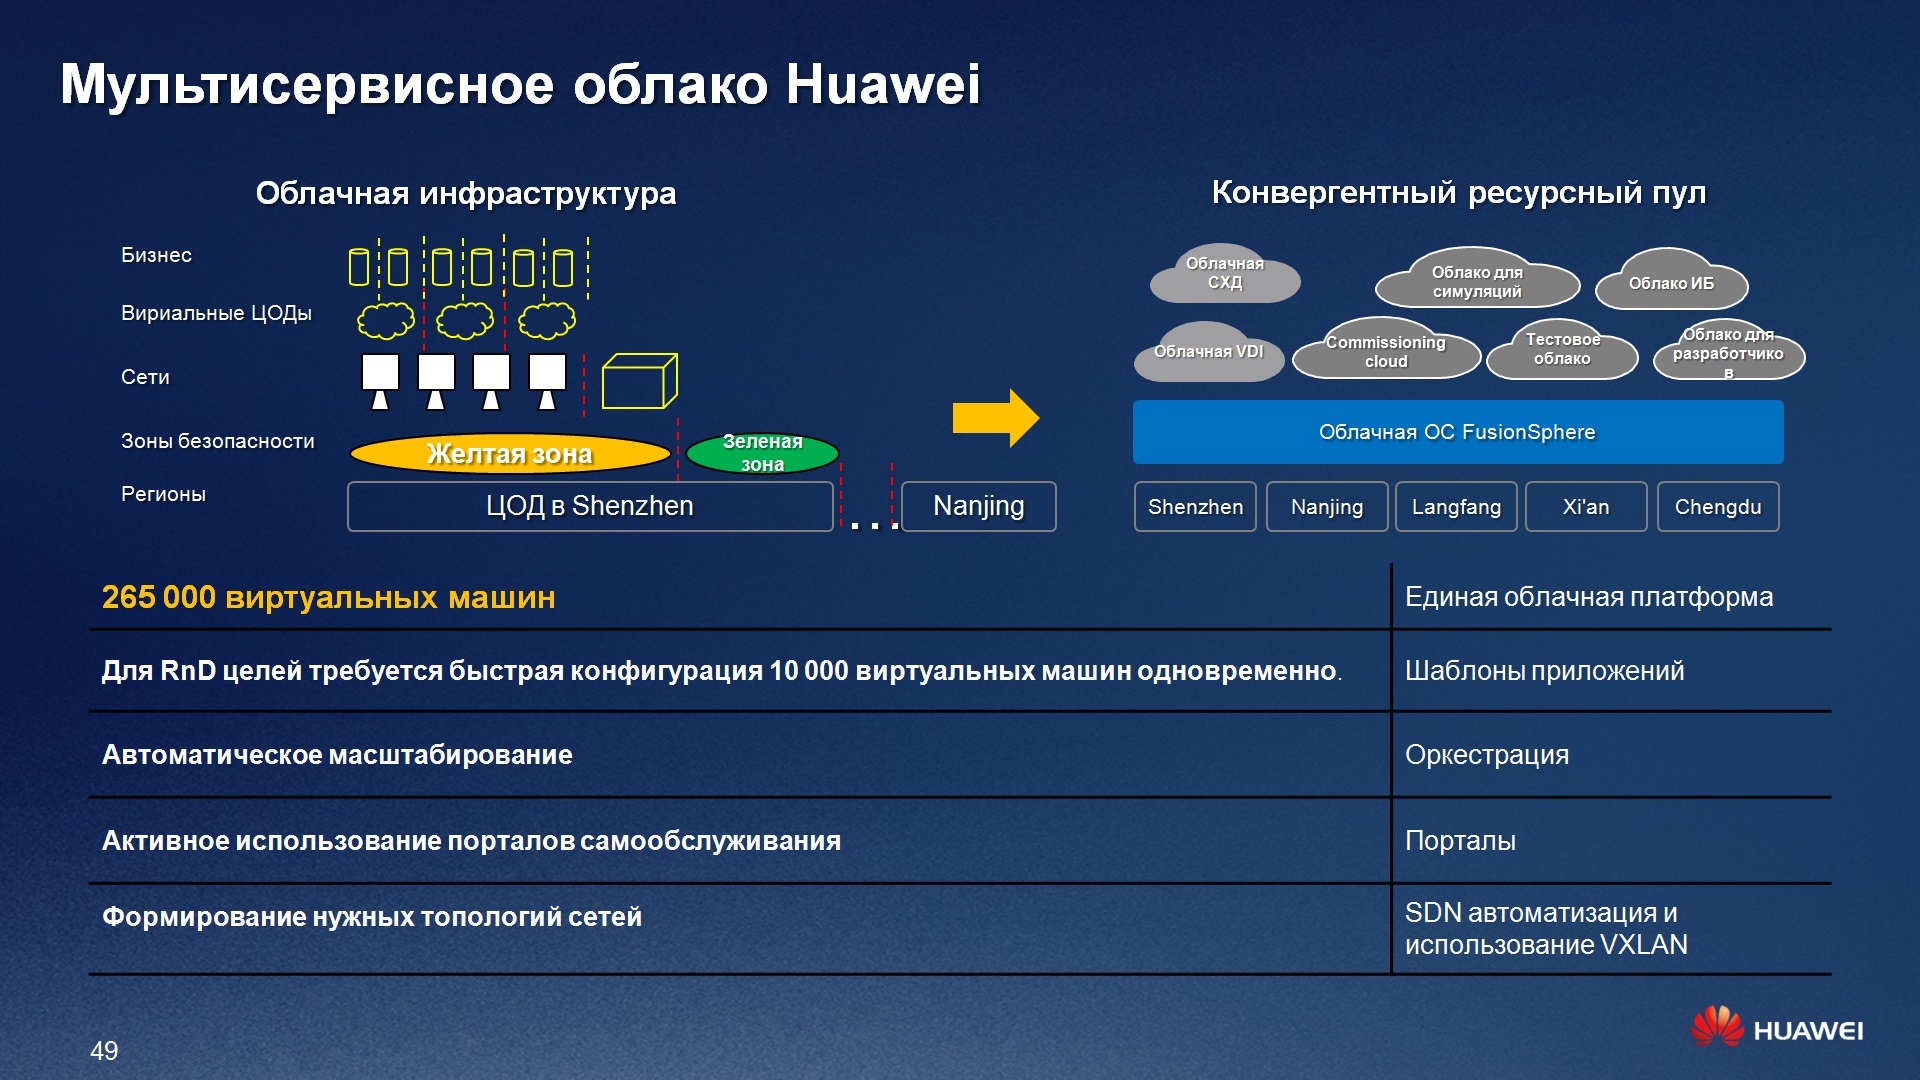 Обновление прошивки на телефоне Huawei, утилита HiSuite